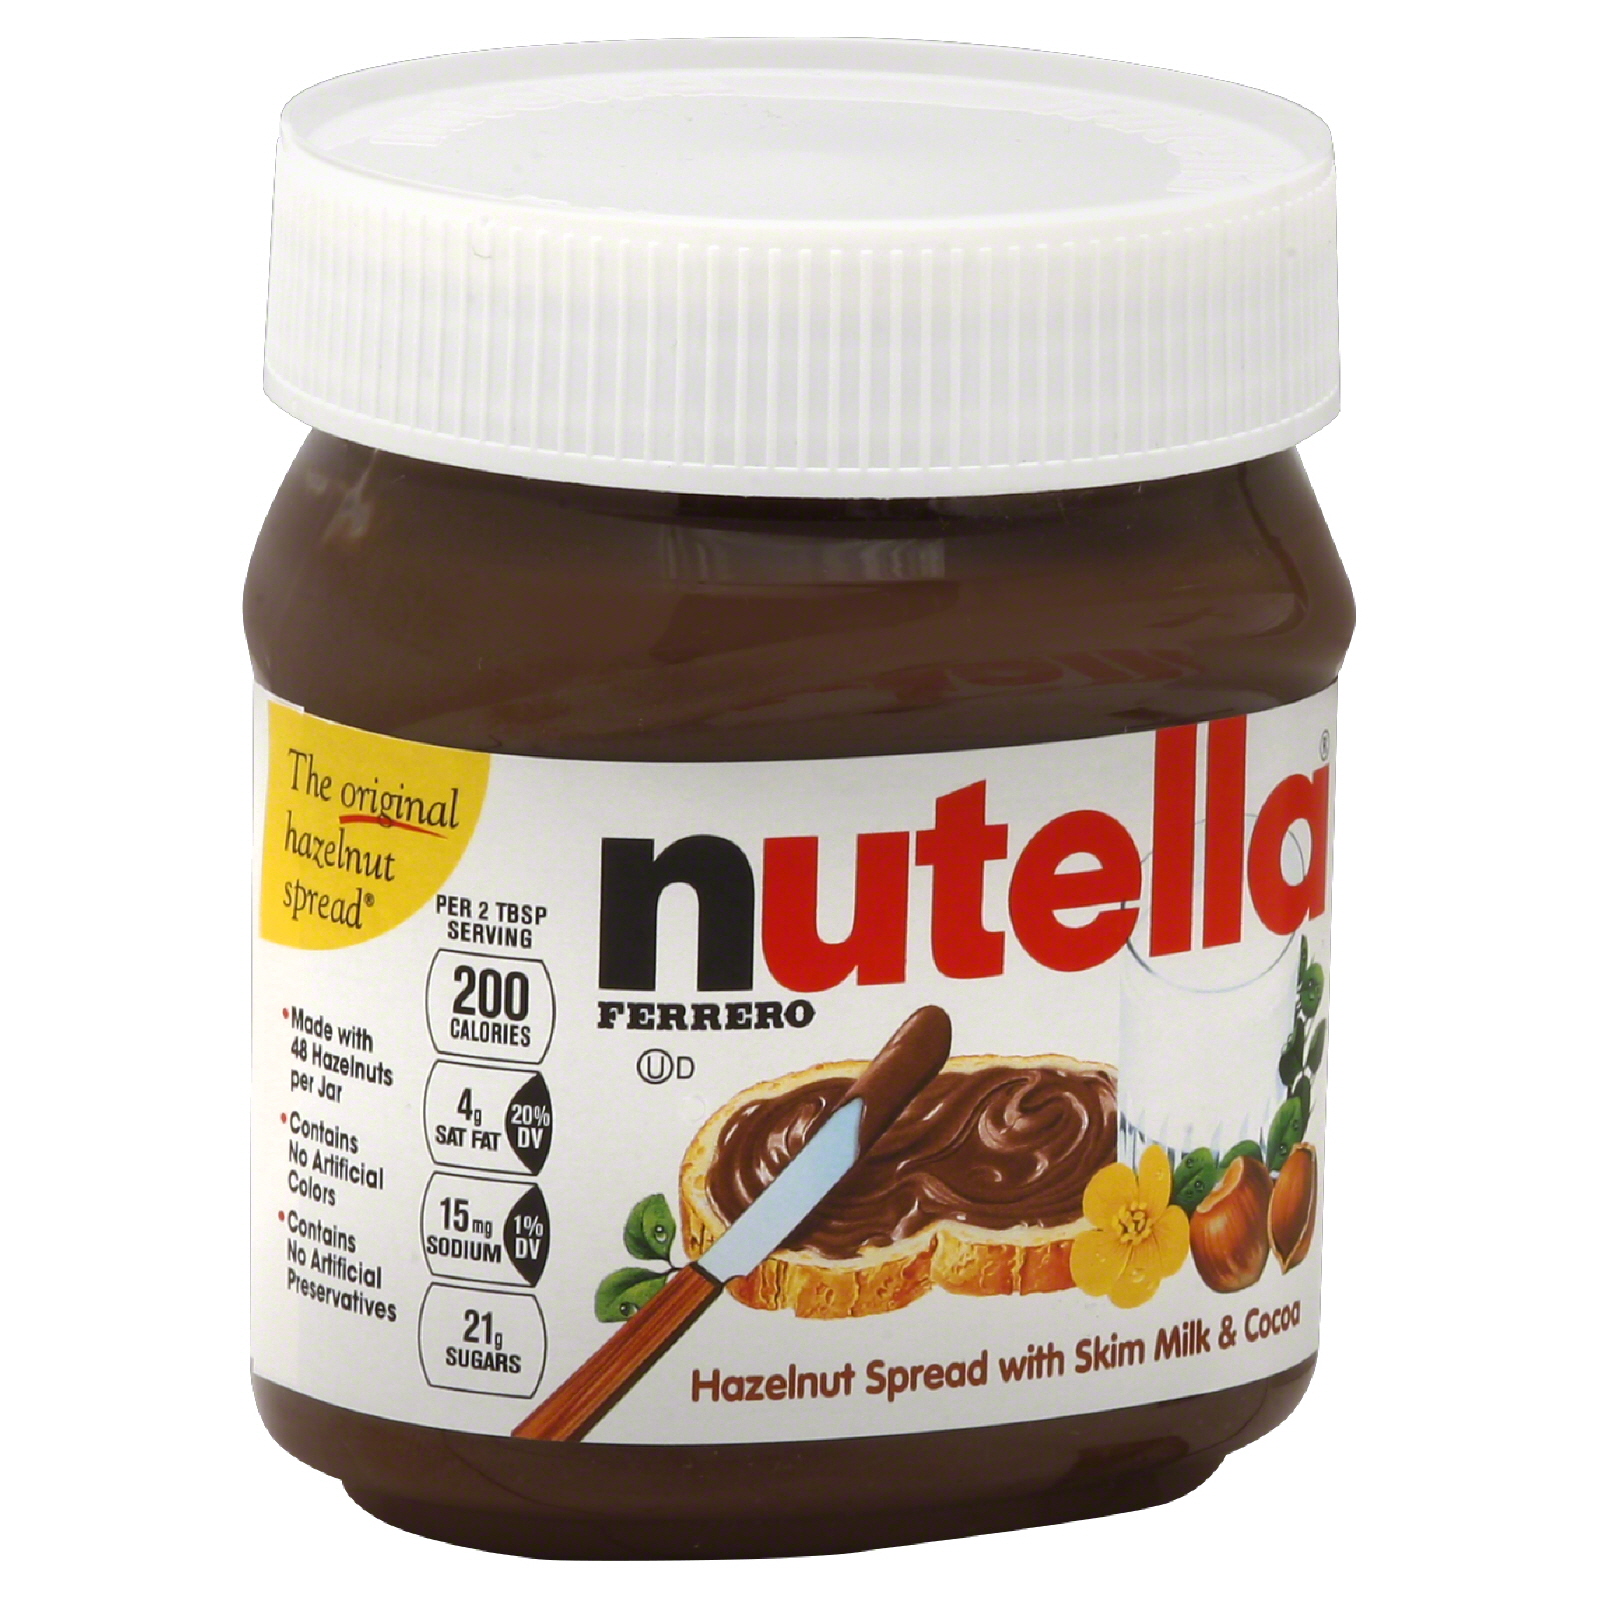 Nutella Hazelnut Spread, with Skim Milk & Cocoa, 13 oz (371 g)